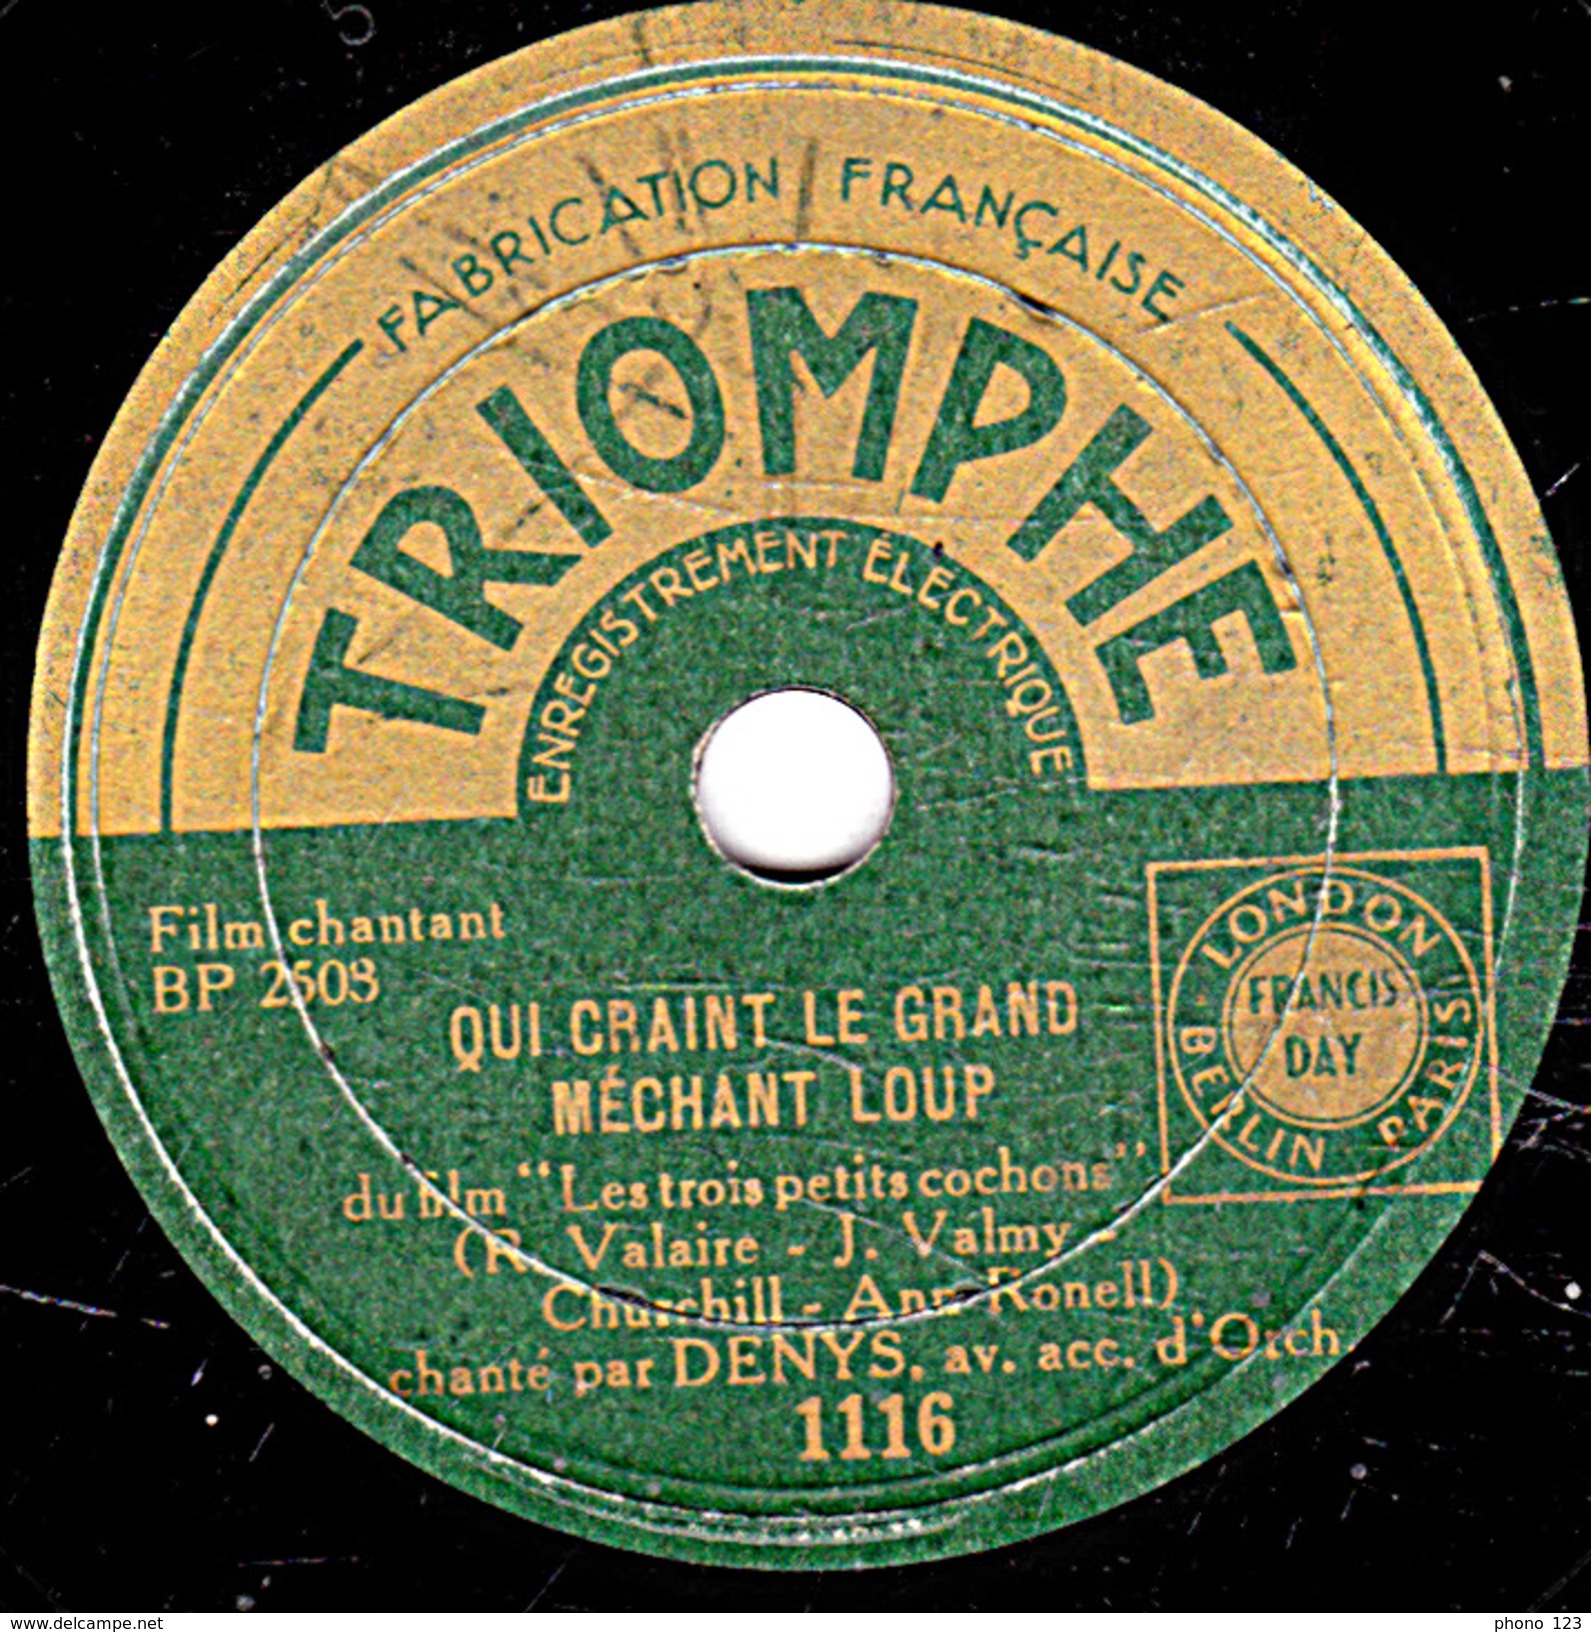 78 T. -  20 Cm - état  B - DENYS - QUI CRAINT LE GRAND MECHANT LOUP - ADIEU - 78 T - Disques Pour Gramophone